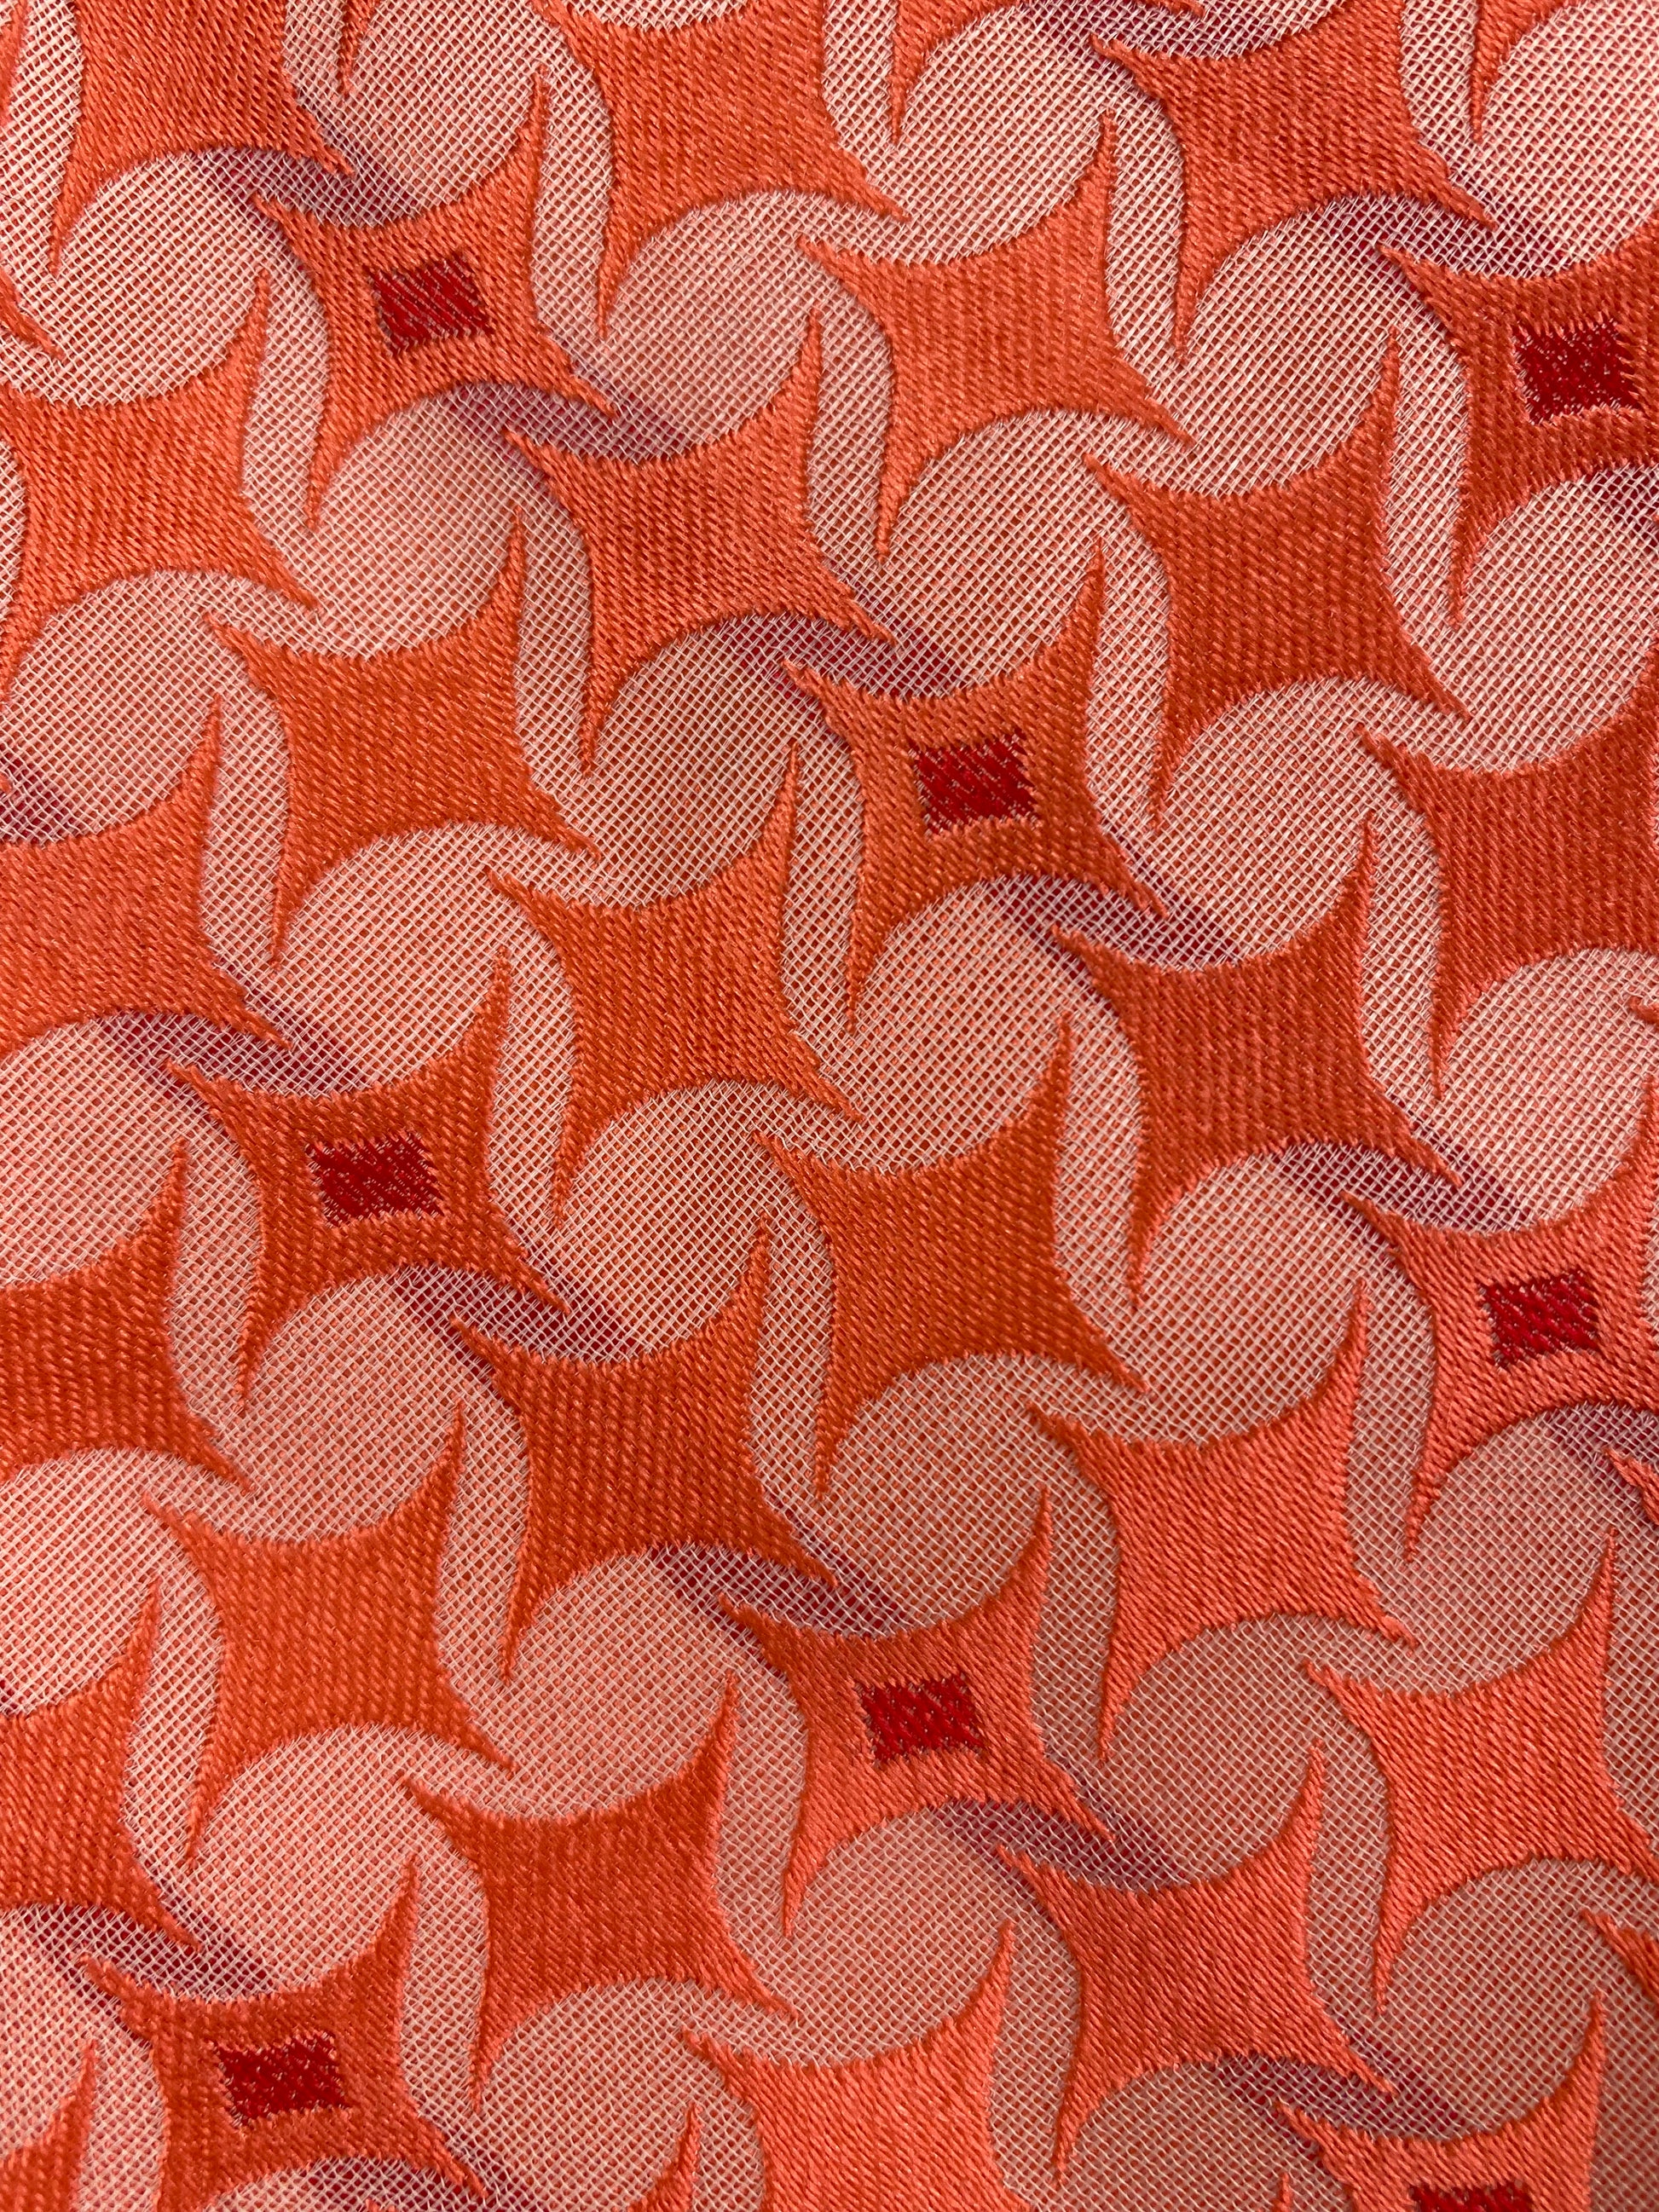 Close-up detail of: 90s Deadstock Silk Necktie, Men's Vintage Peach Colour Geometric Pattern Tie, NOS